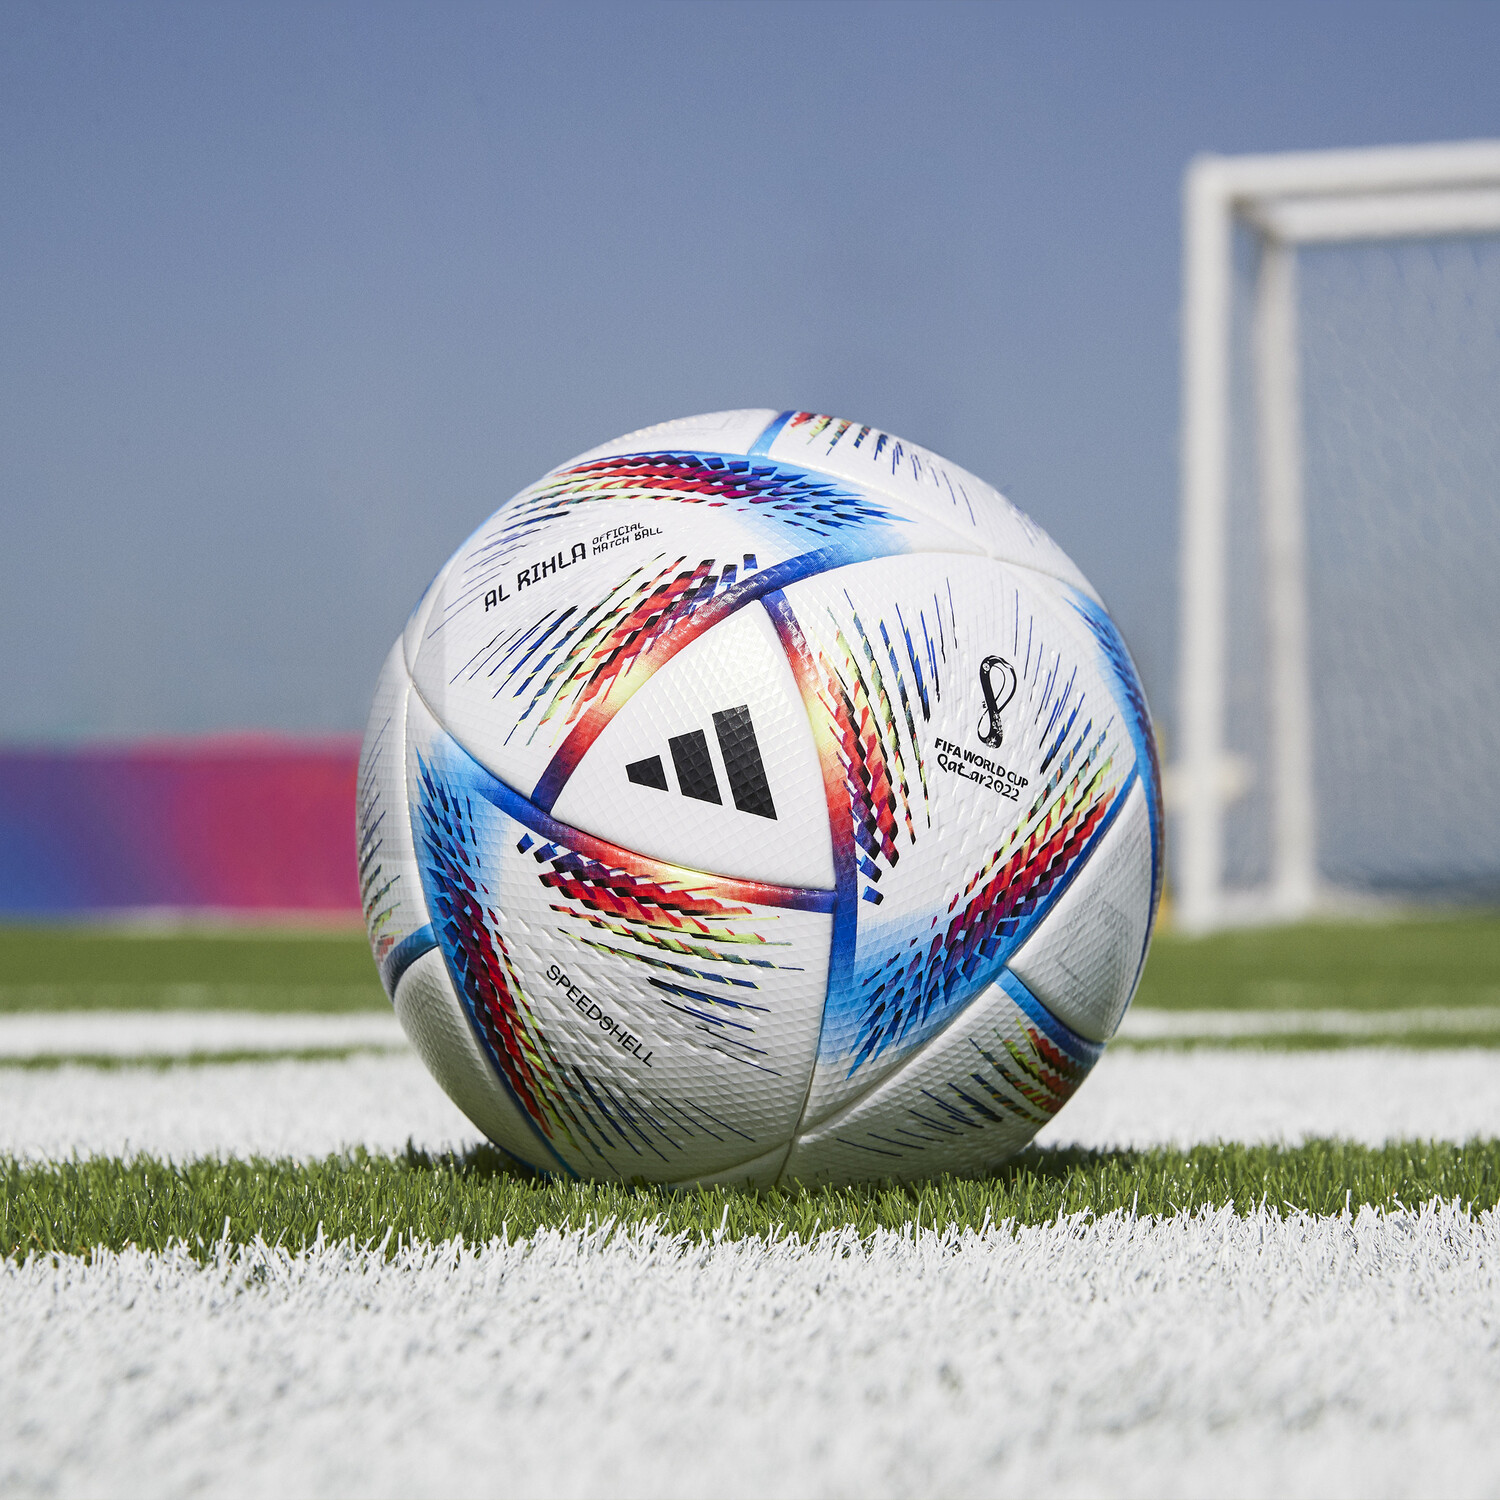 Coupe du monde 2022 : adidas présente le ballon officiel « Al Rihla »